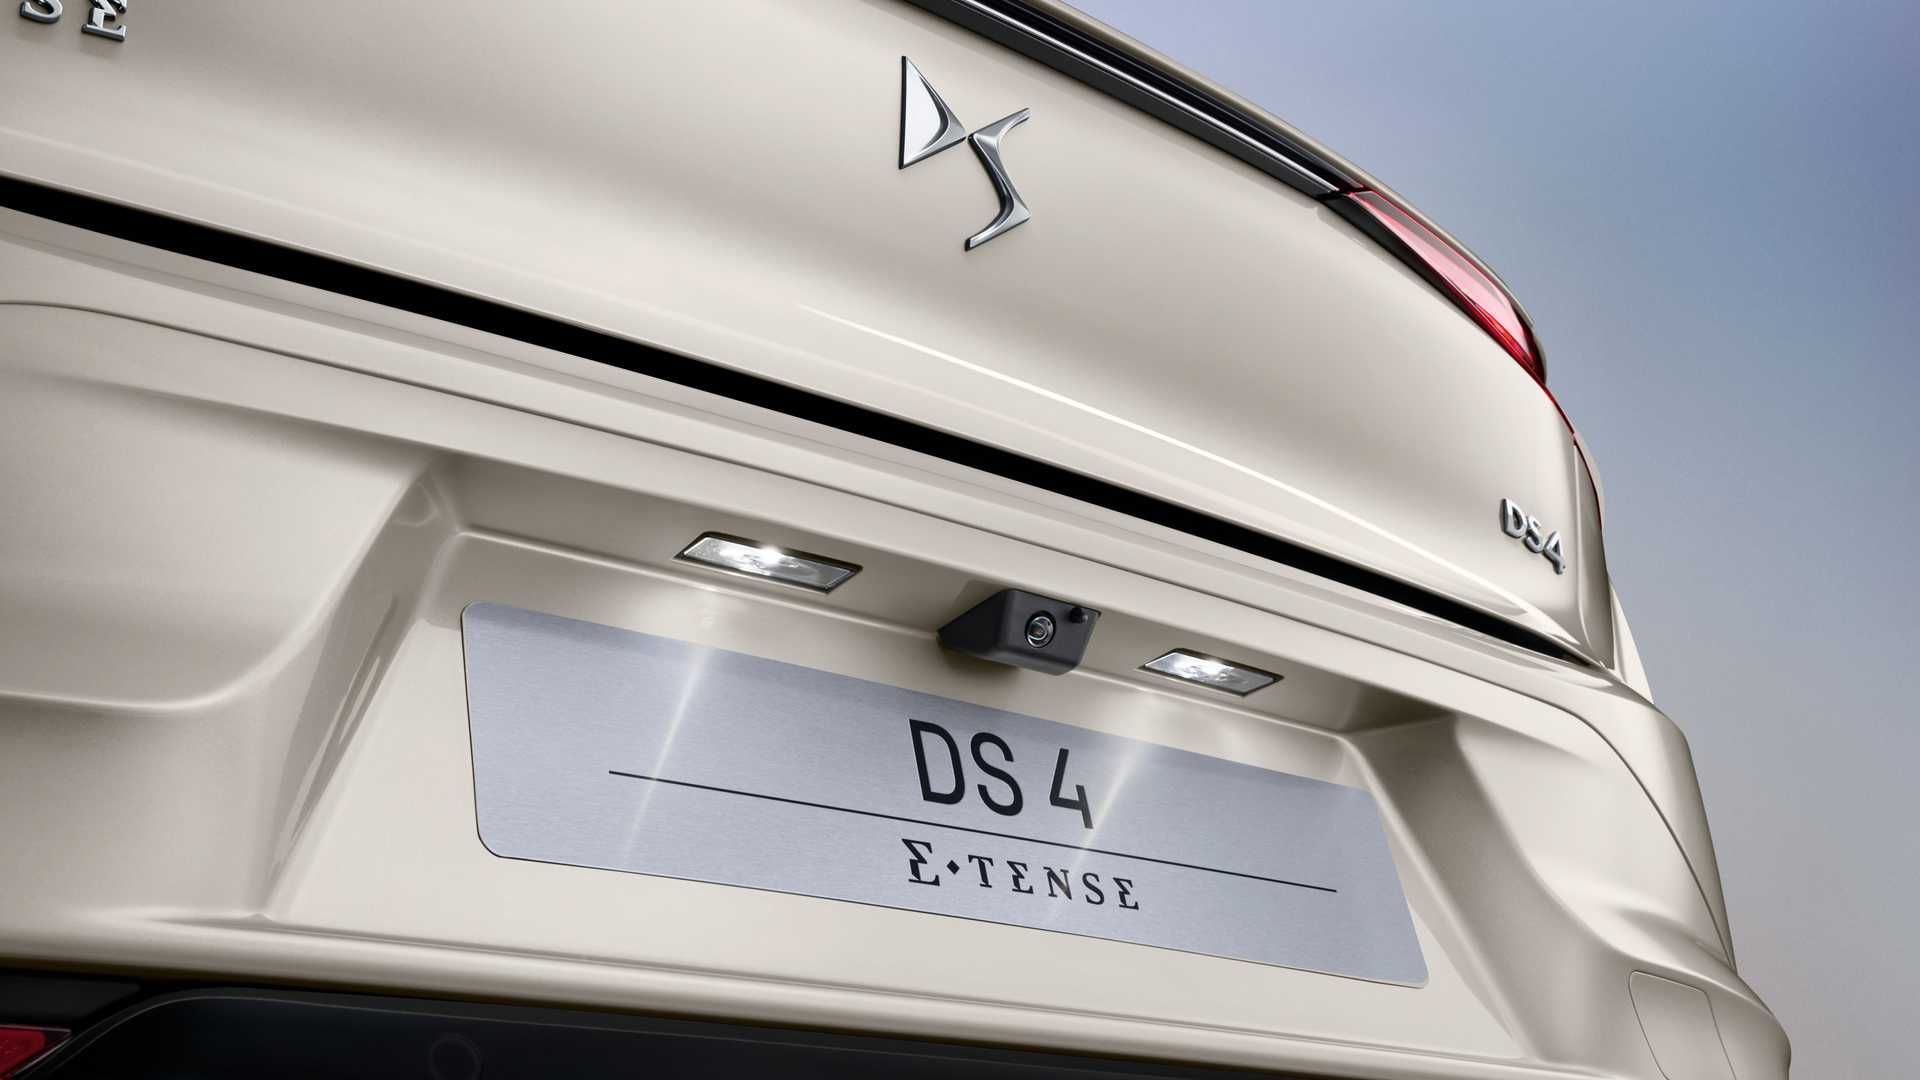   DS 4 دی اس 4 مدل 2022 نمای سپر عقب